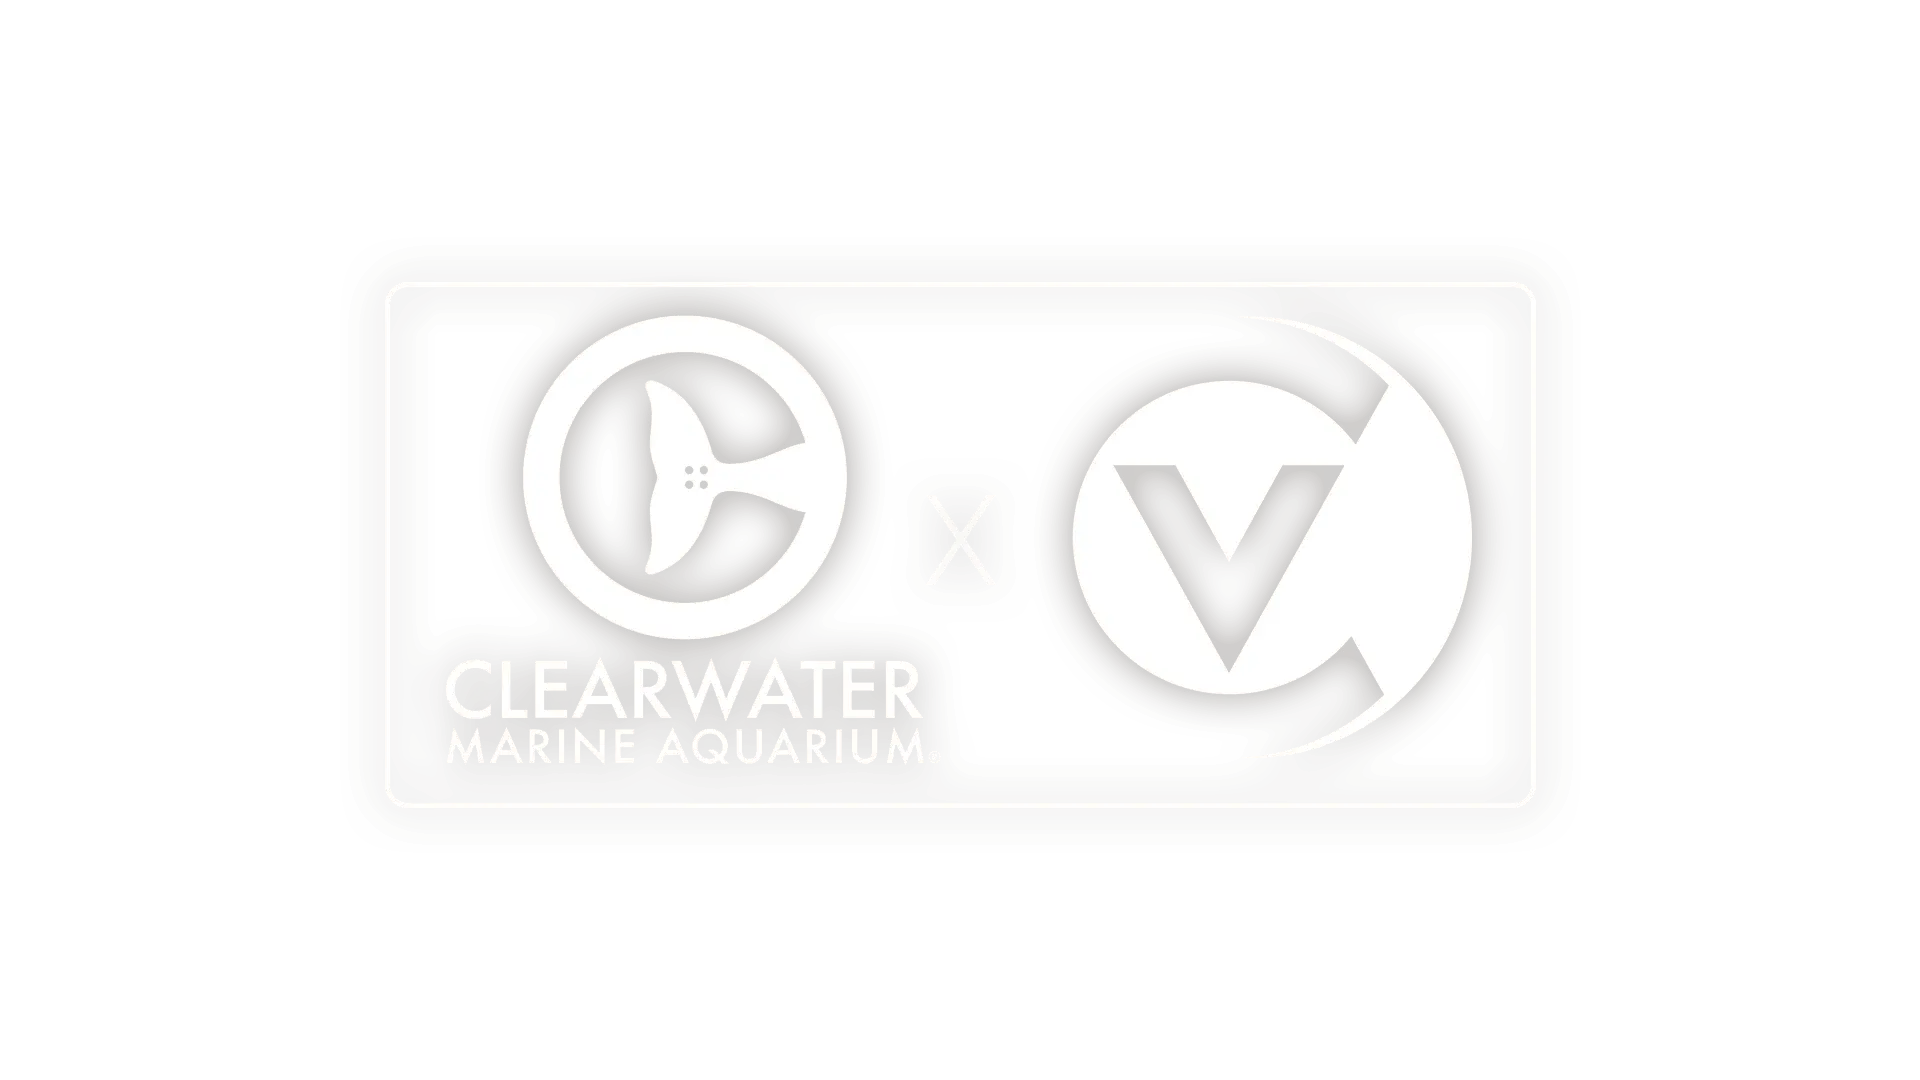 Clearwater Marine Aquarium logo.